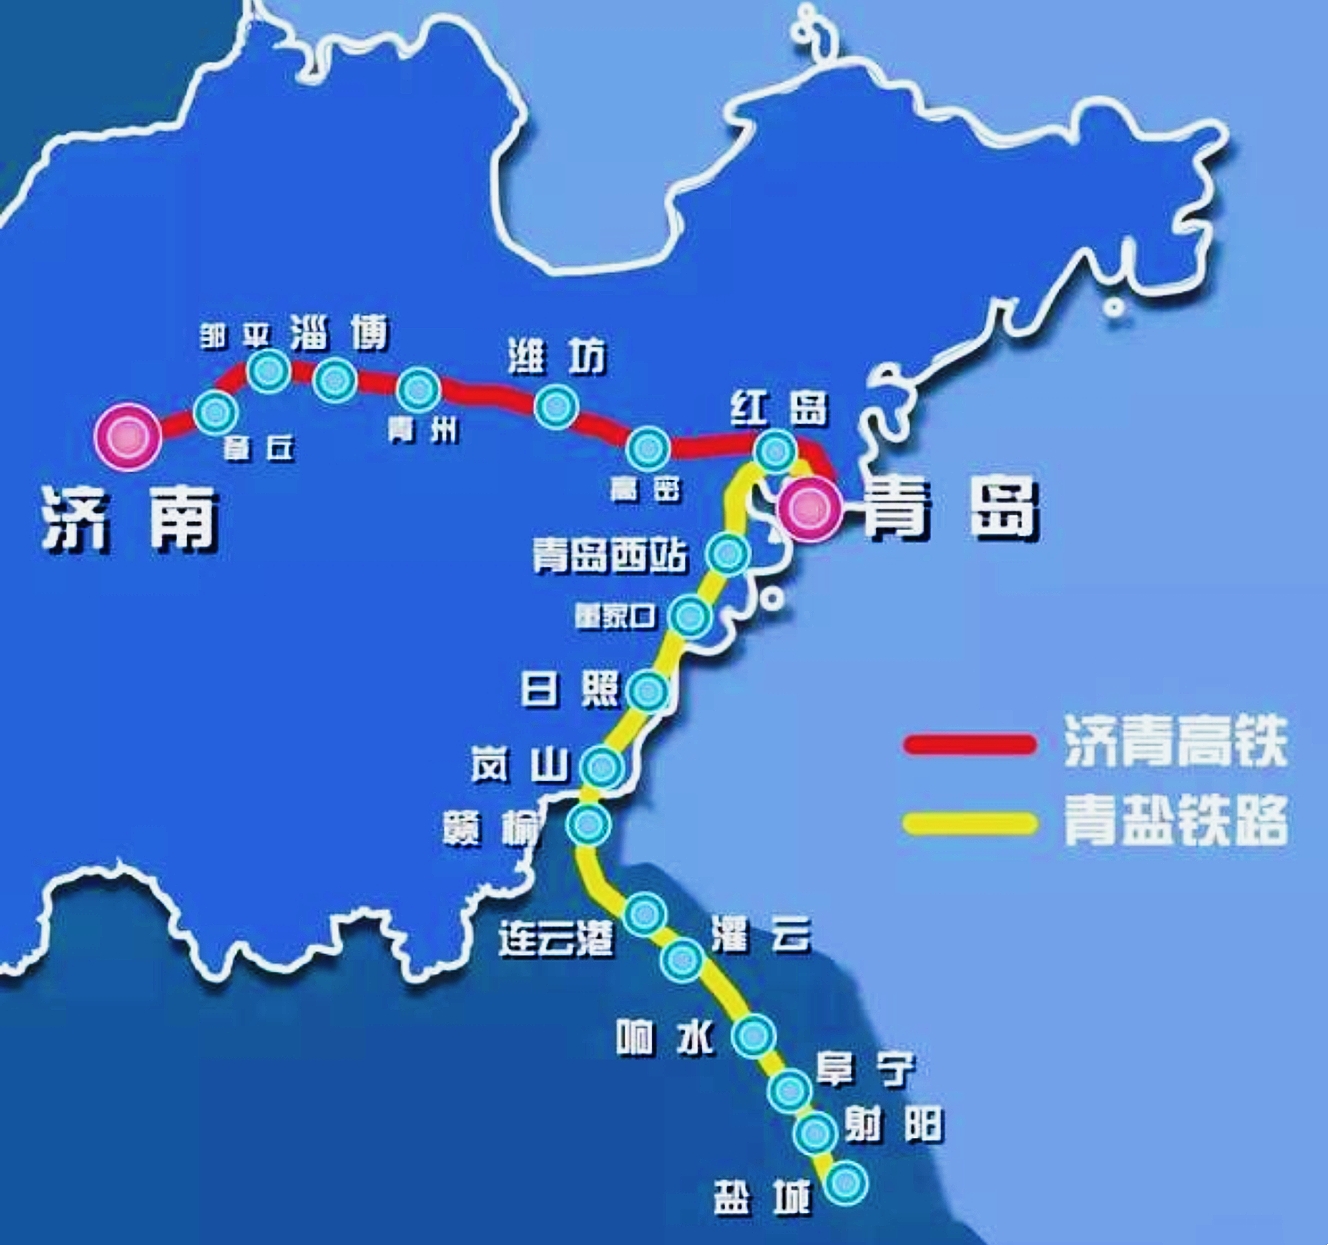 中国高速铁路网四纵四横骨干网线路图